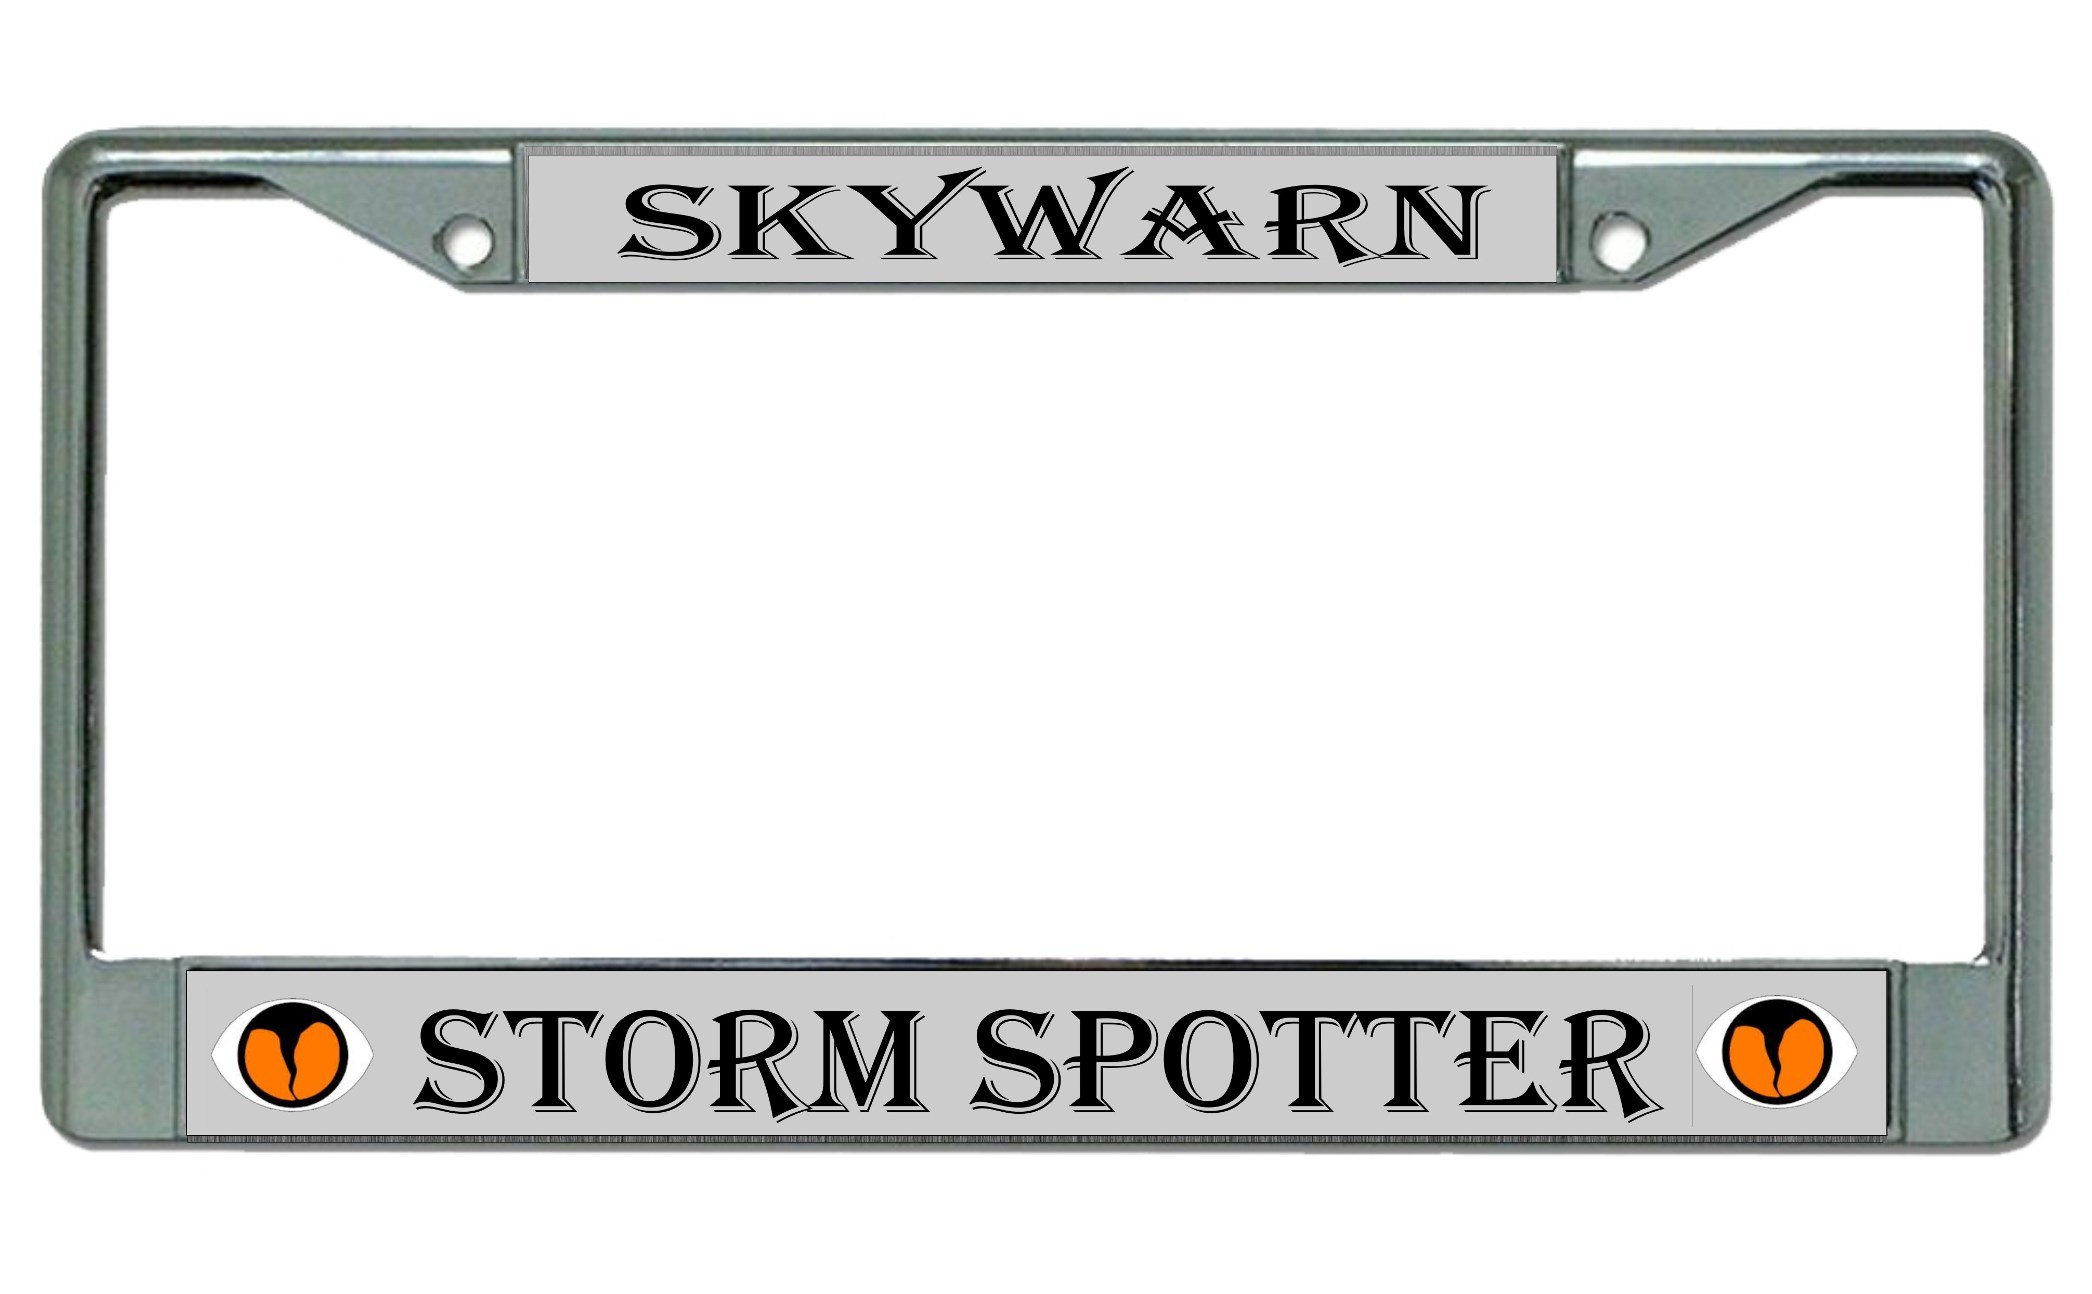 Skywarn Storm Spotter Chrome License Plate FRAME